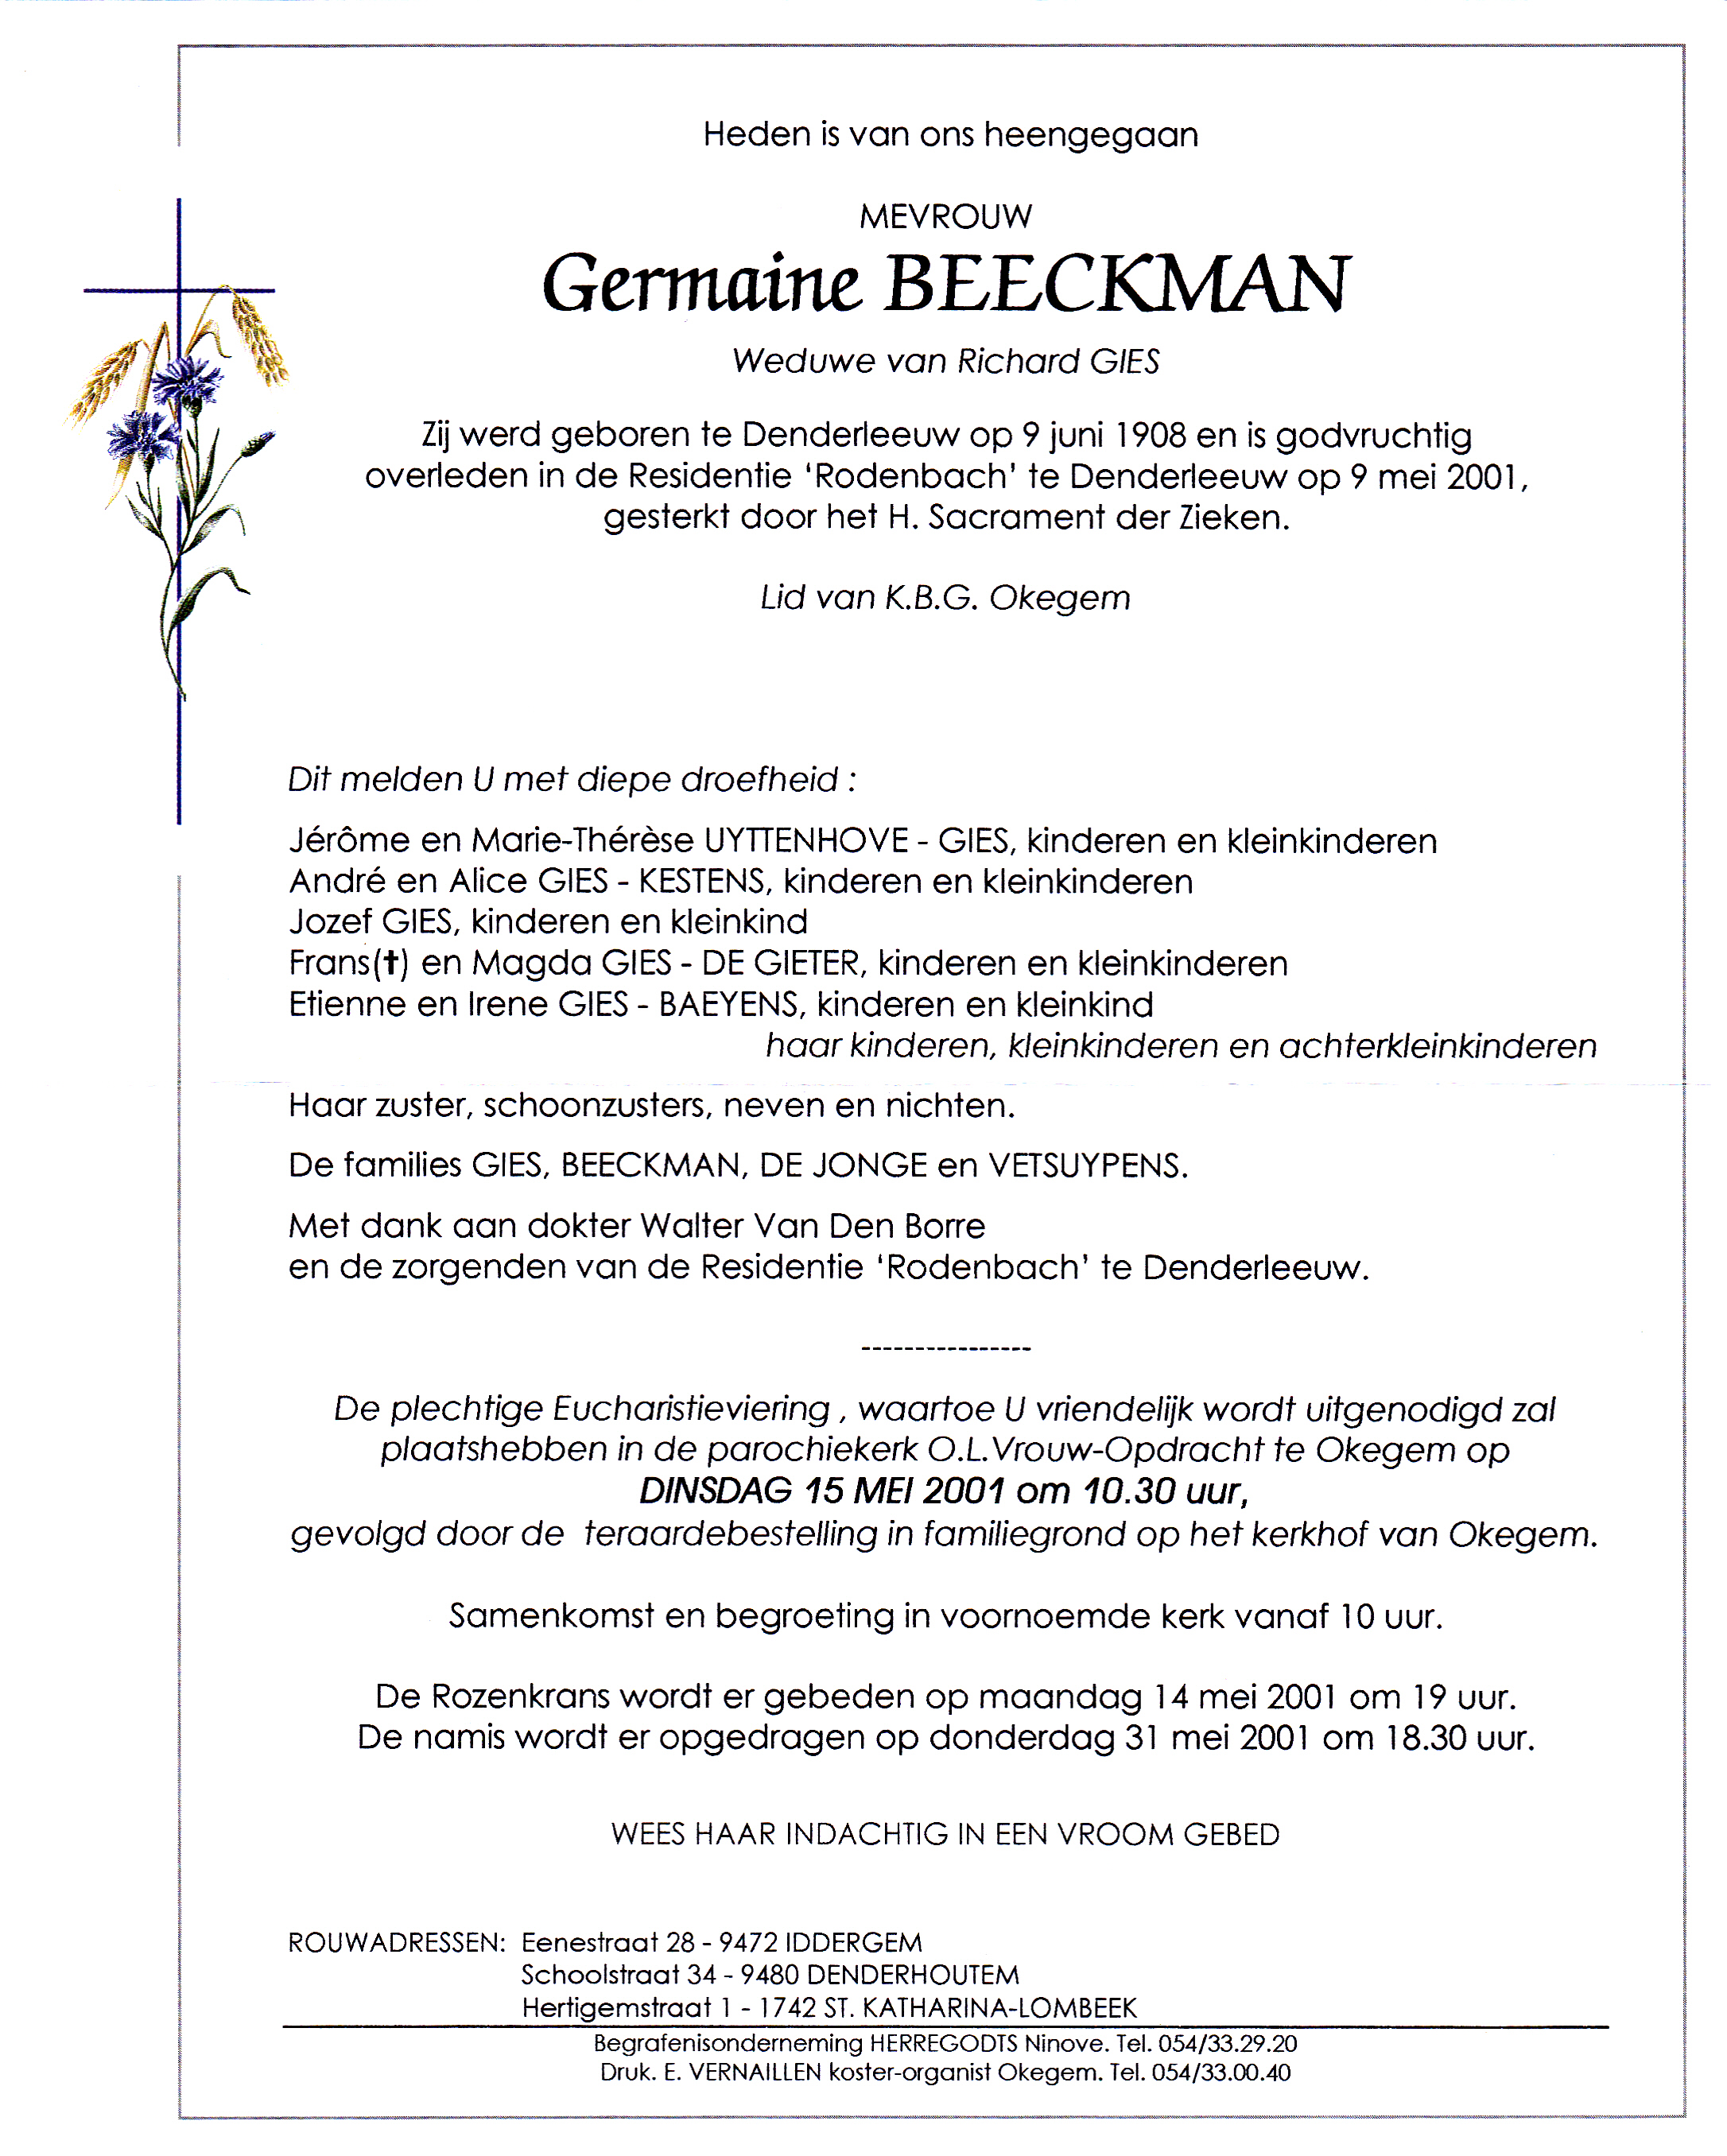 Beeckman Germaine 